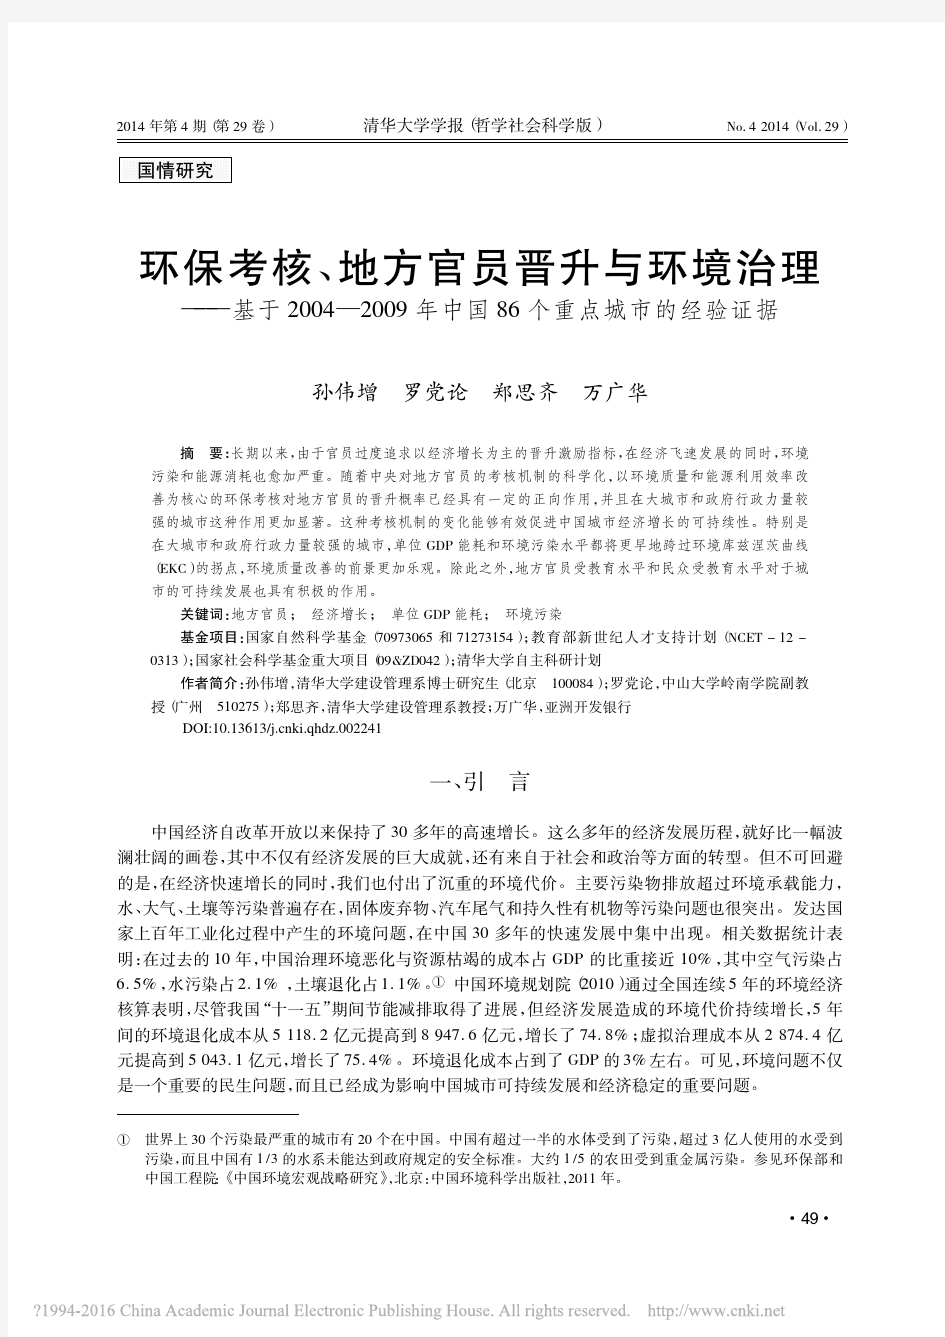 孙伟增 et al. - 2014 - 环保考核、地方官员晋升与环境治理 ———基于 2004—2009 年中国 86